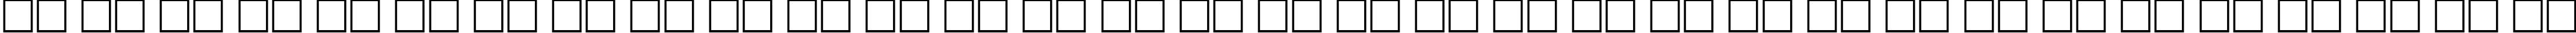 Пример написания русского алфавита шрифтом Bruskovaya80